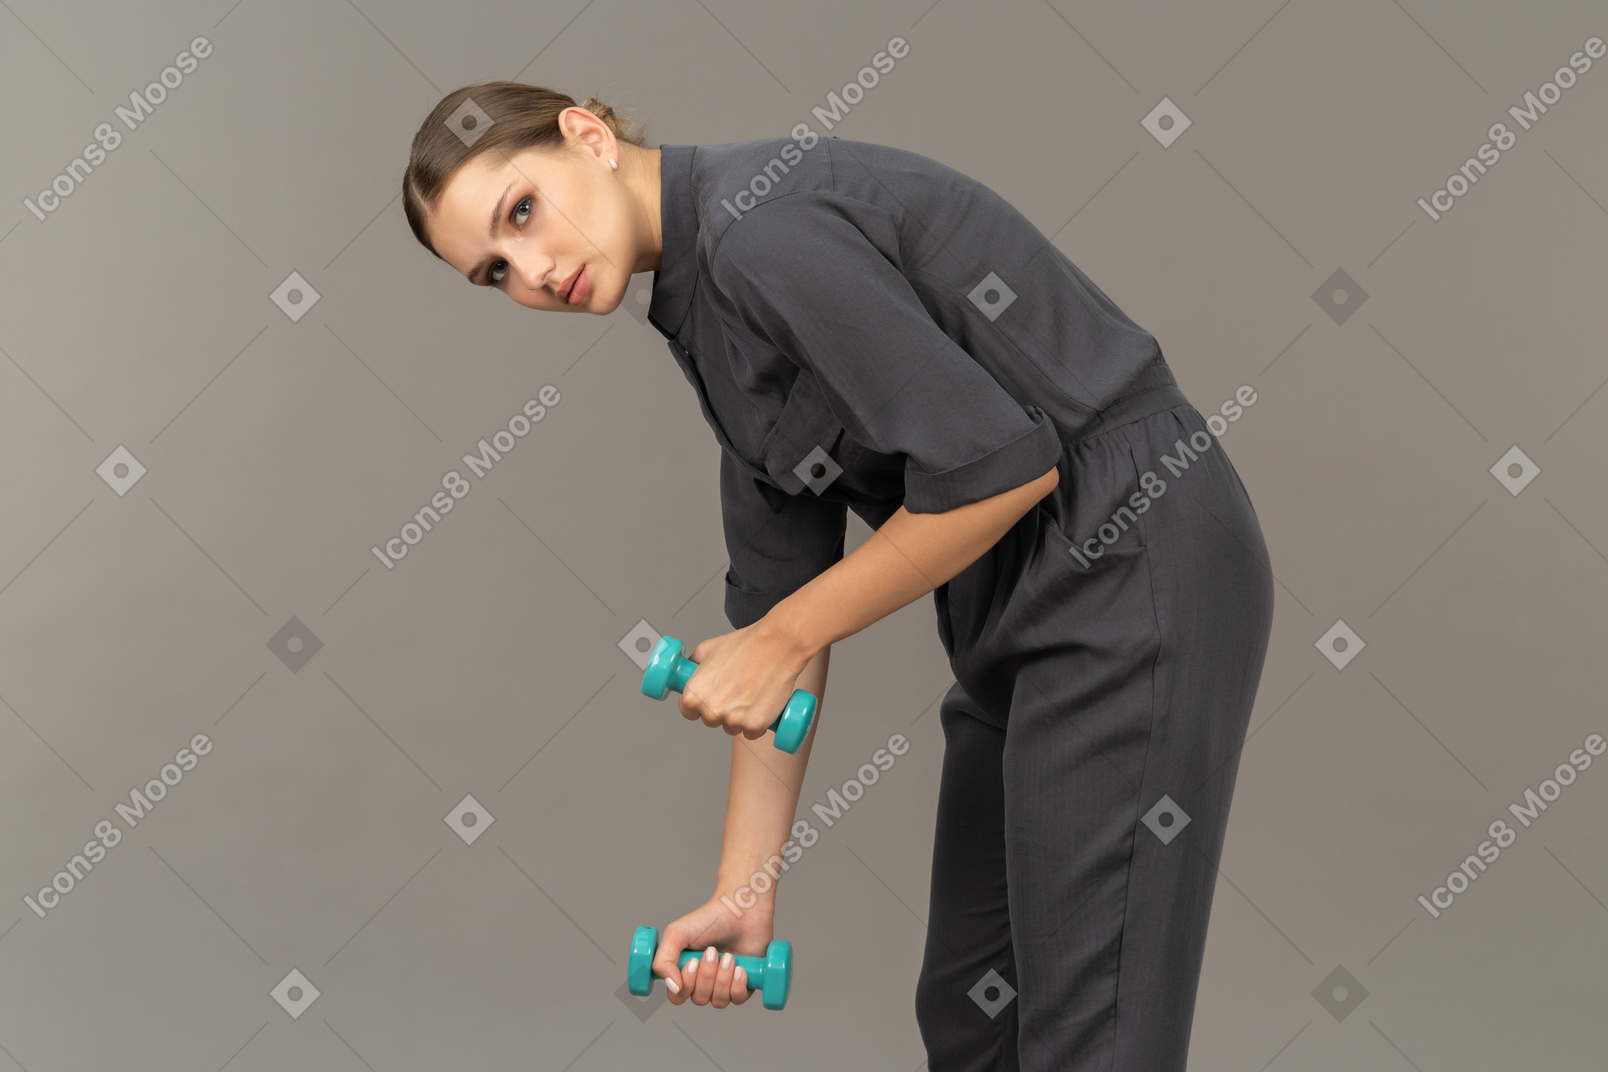 Vista lateral de uma jovem com um macacão fazendo exercícios com halteres